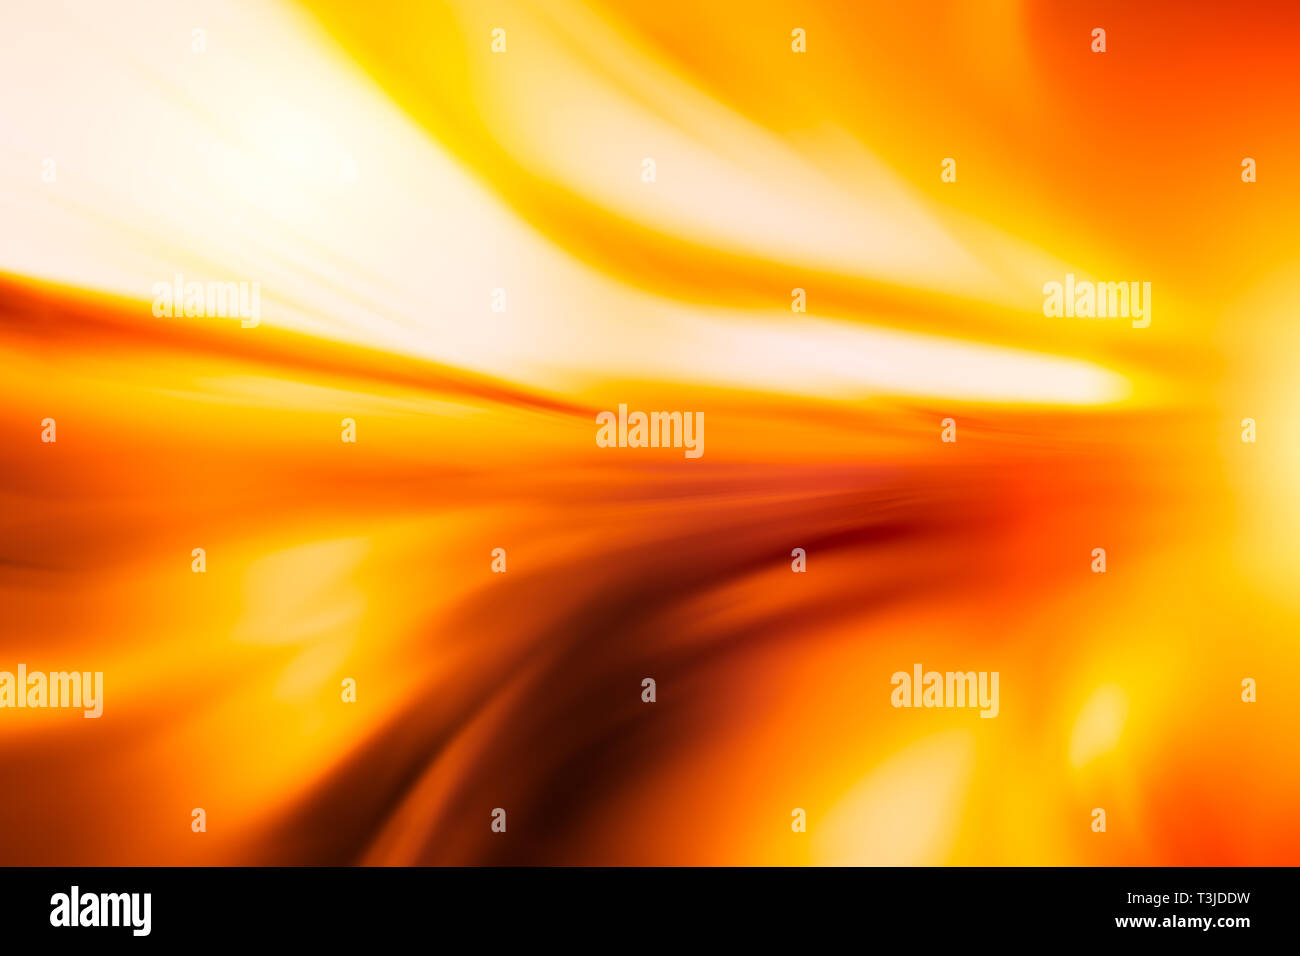 Feuer heiß High speed motion blur Abstract für backgroun Stockfoto